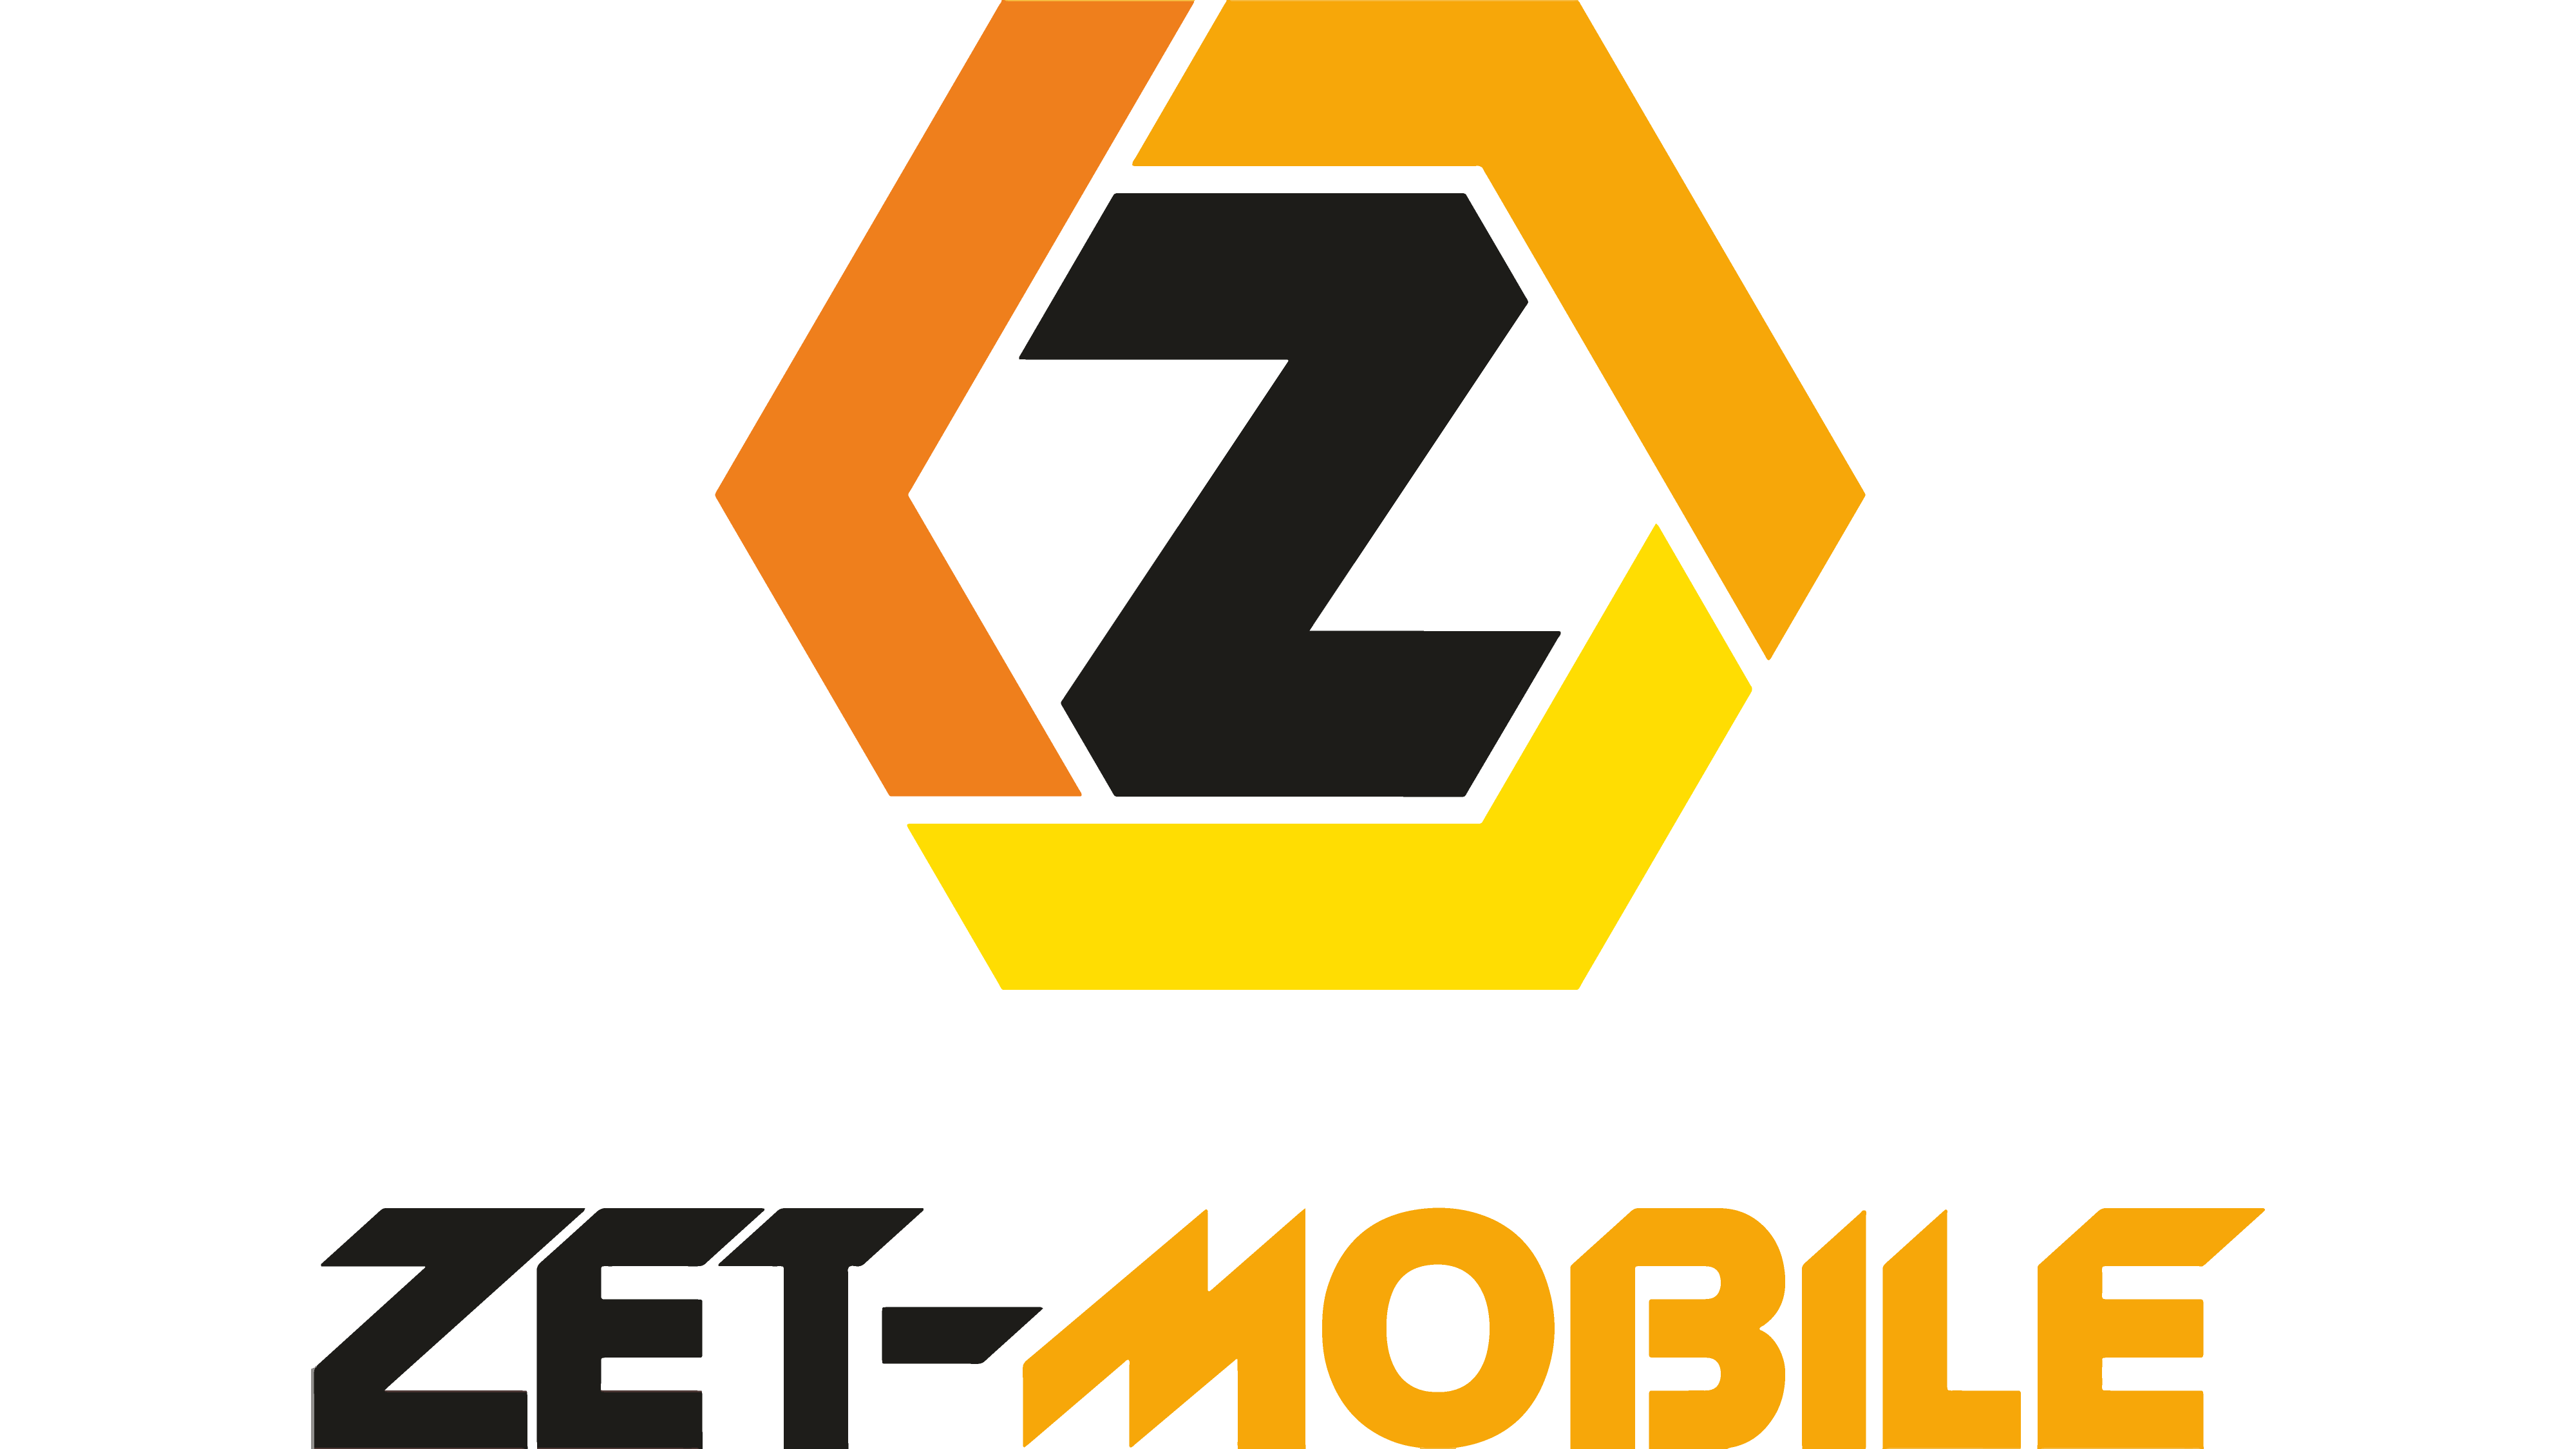 Zet mobile. Логотип zet mobile. Зет мобайл Таджикистан. Zet mobile.TJ.